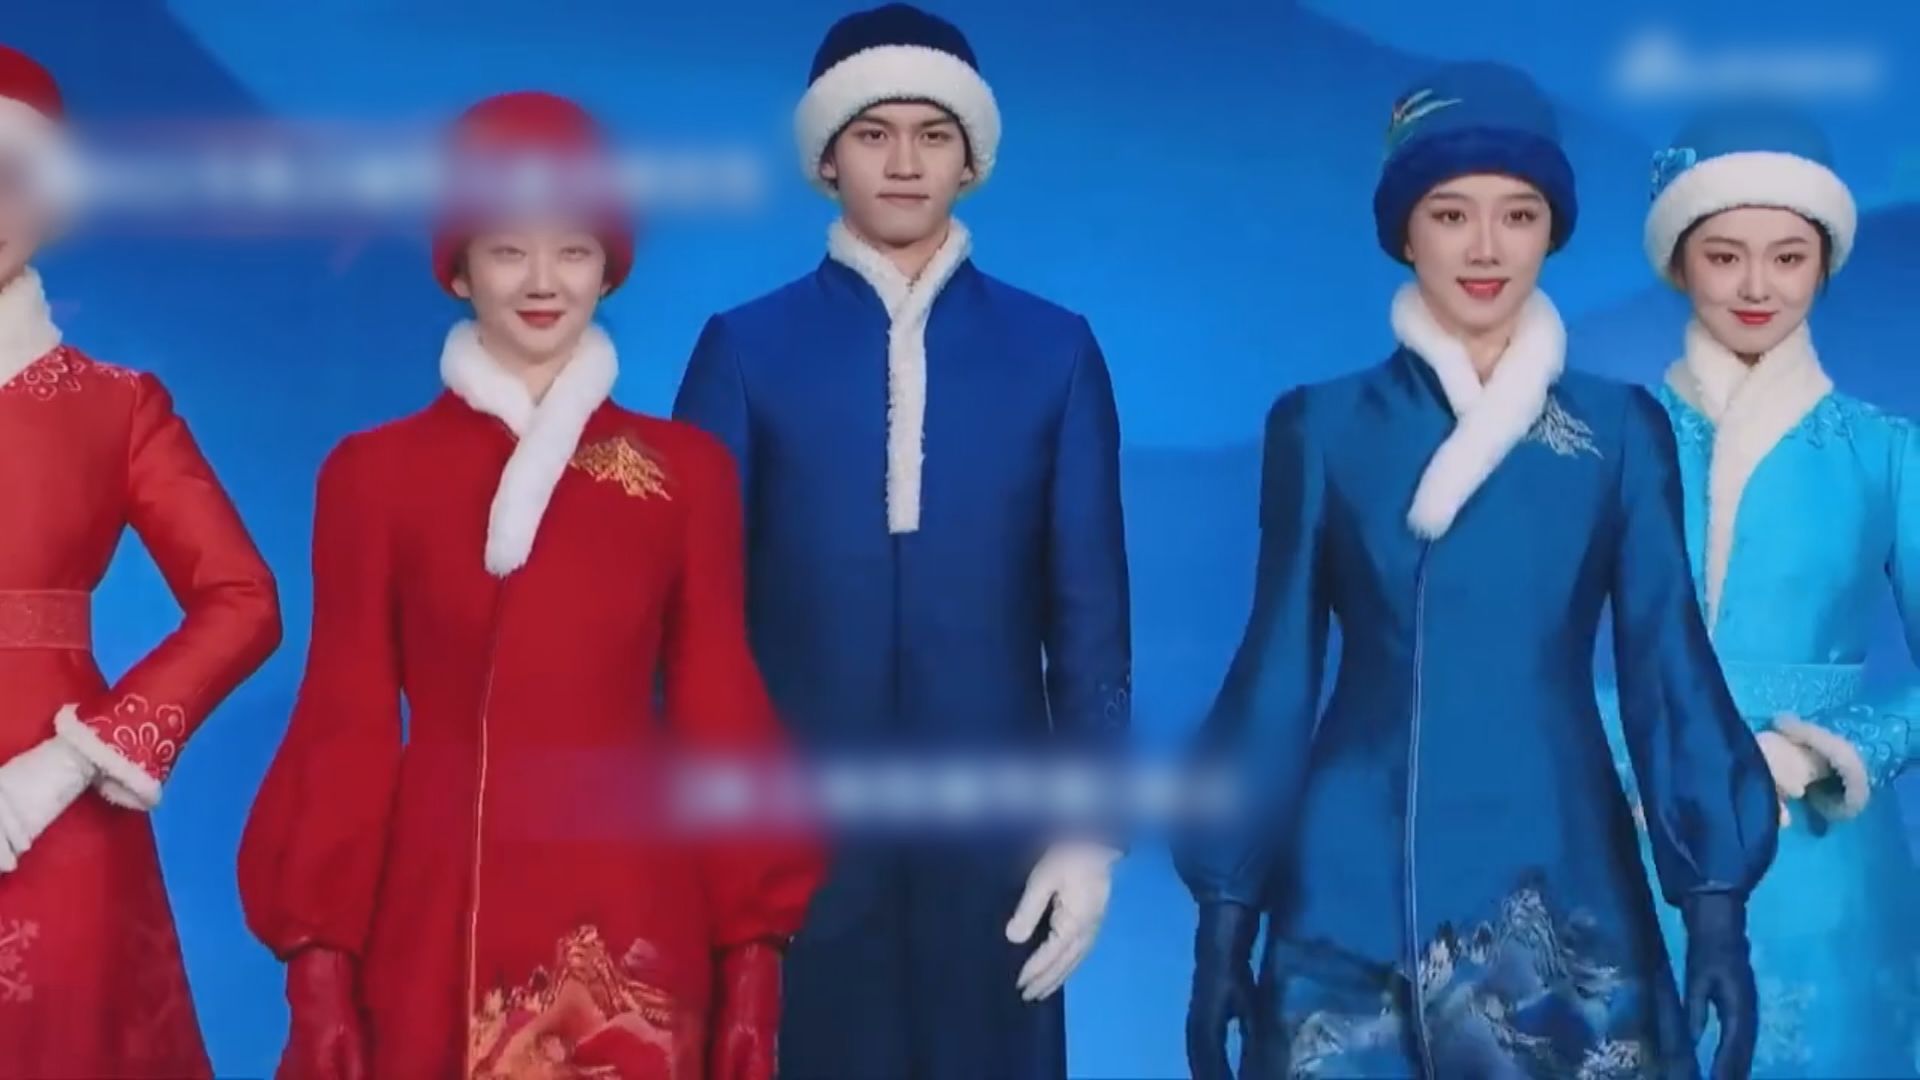 北京冬奧組委發布頒獎服裝等設計